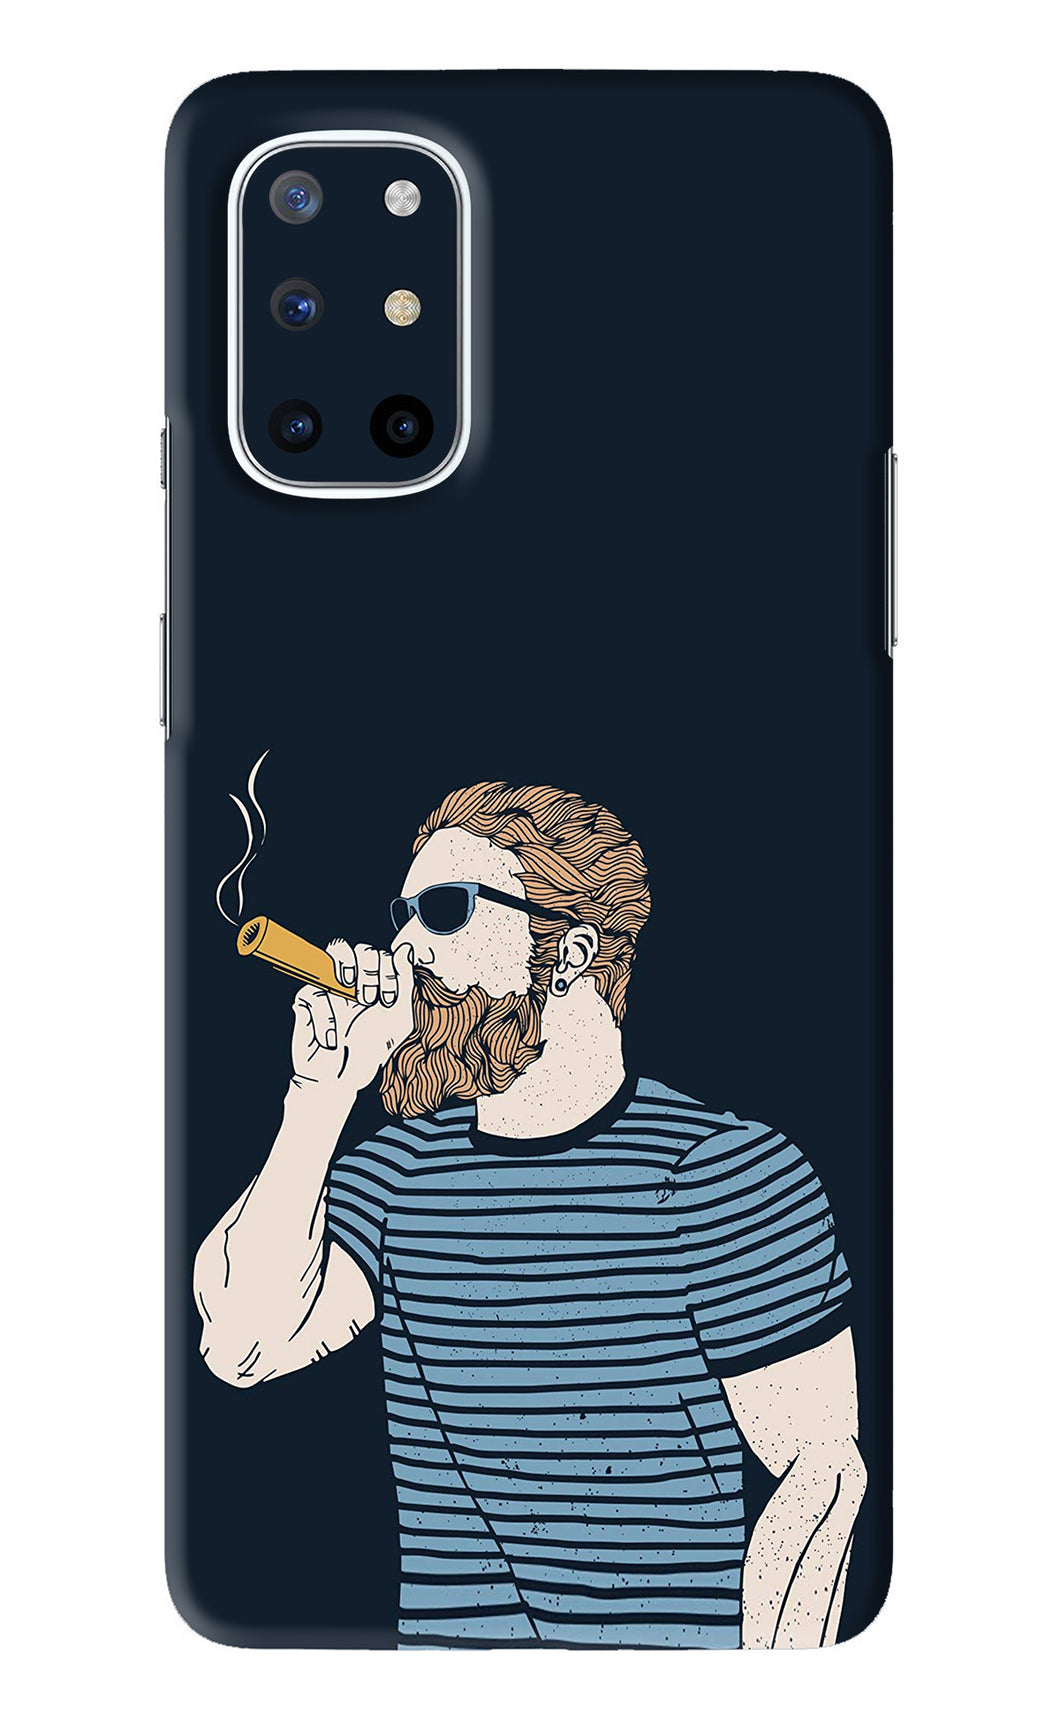 Smoking OnePlus 8T Back Skin Wrap